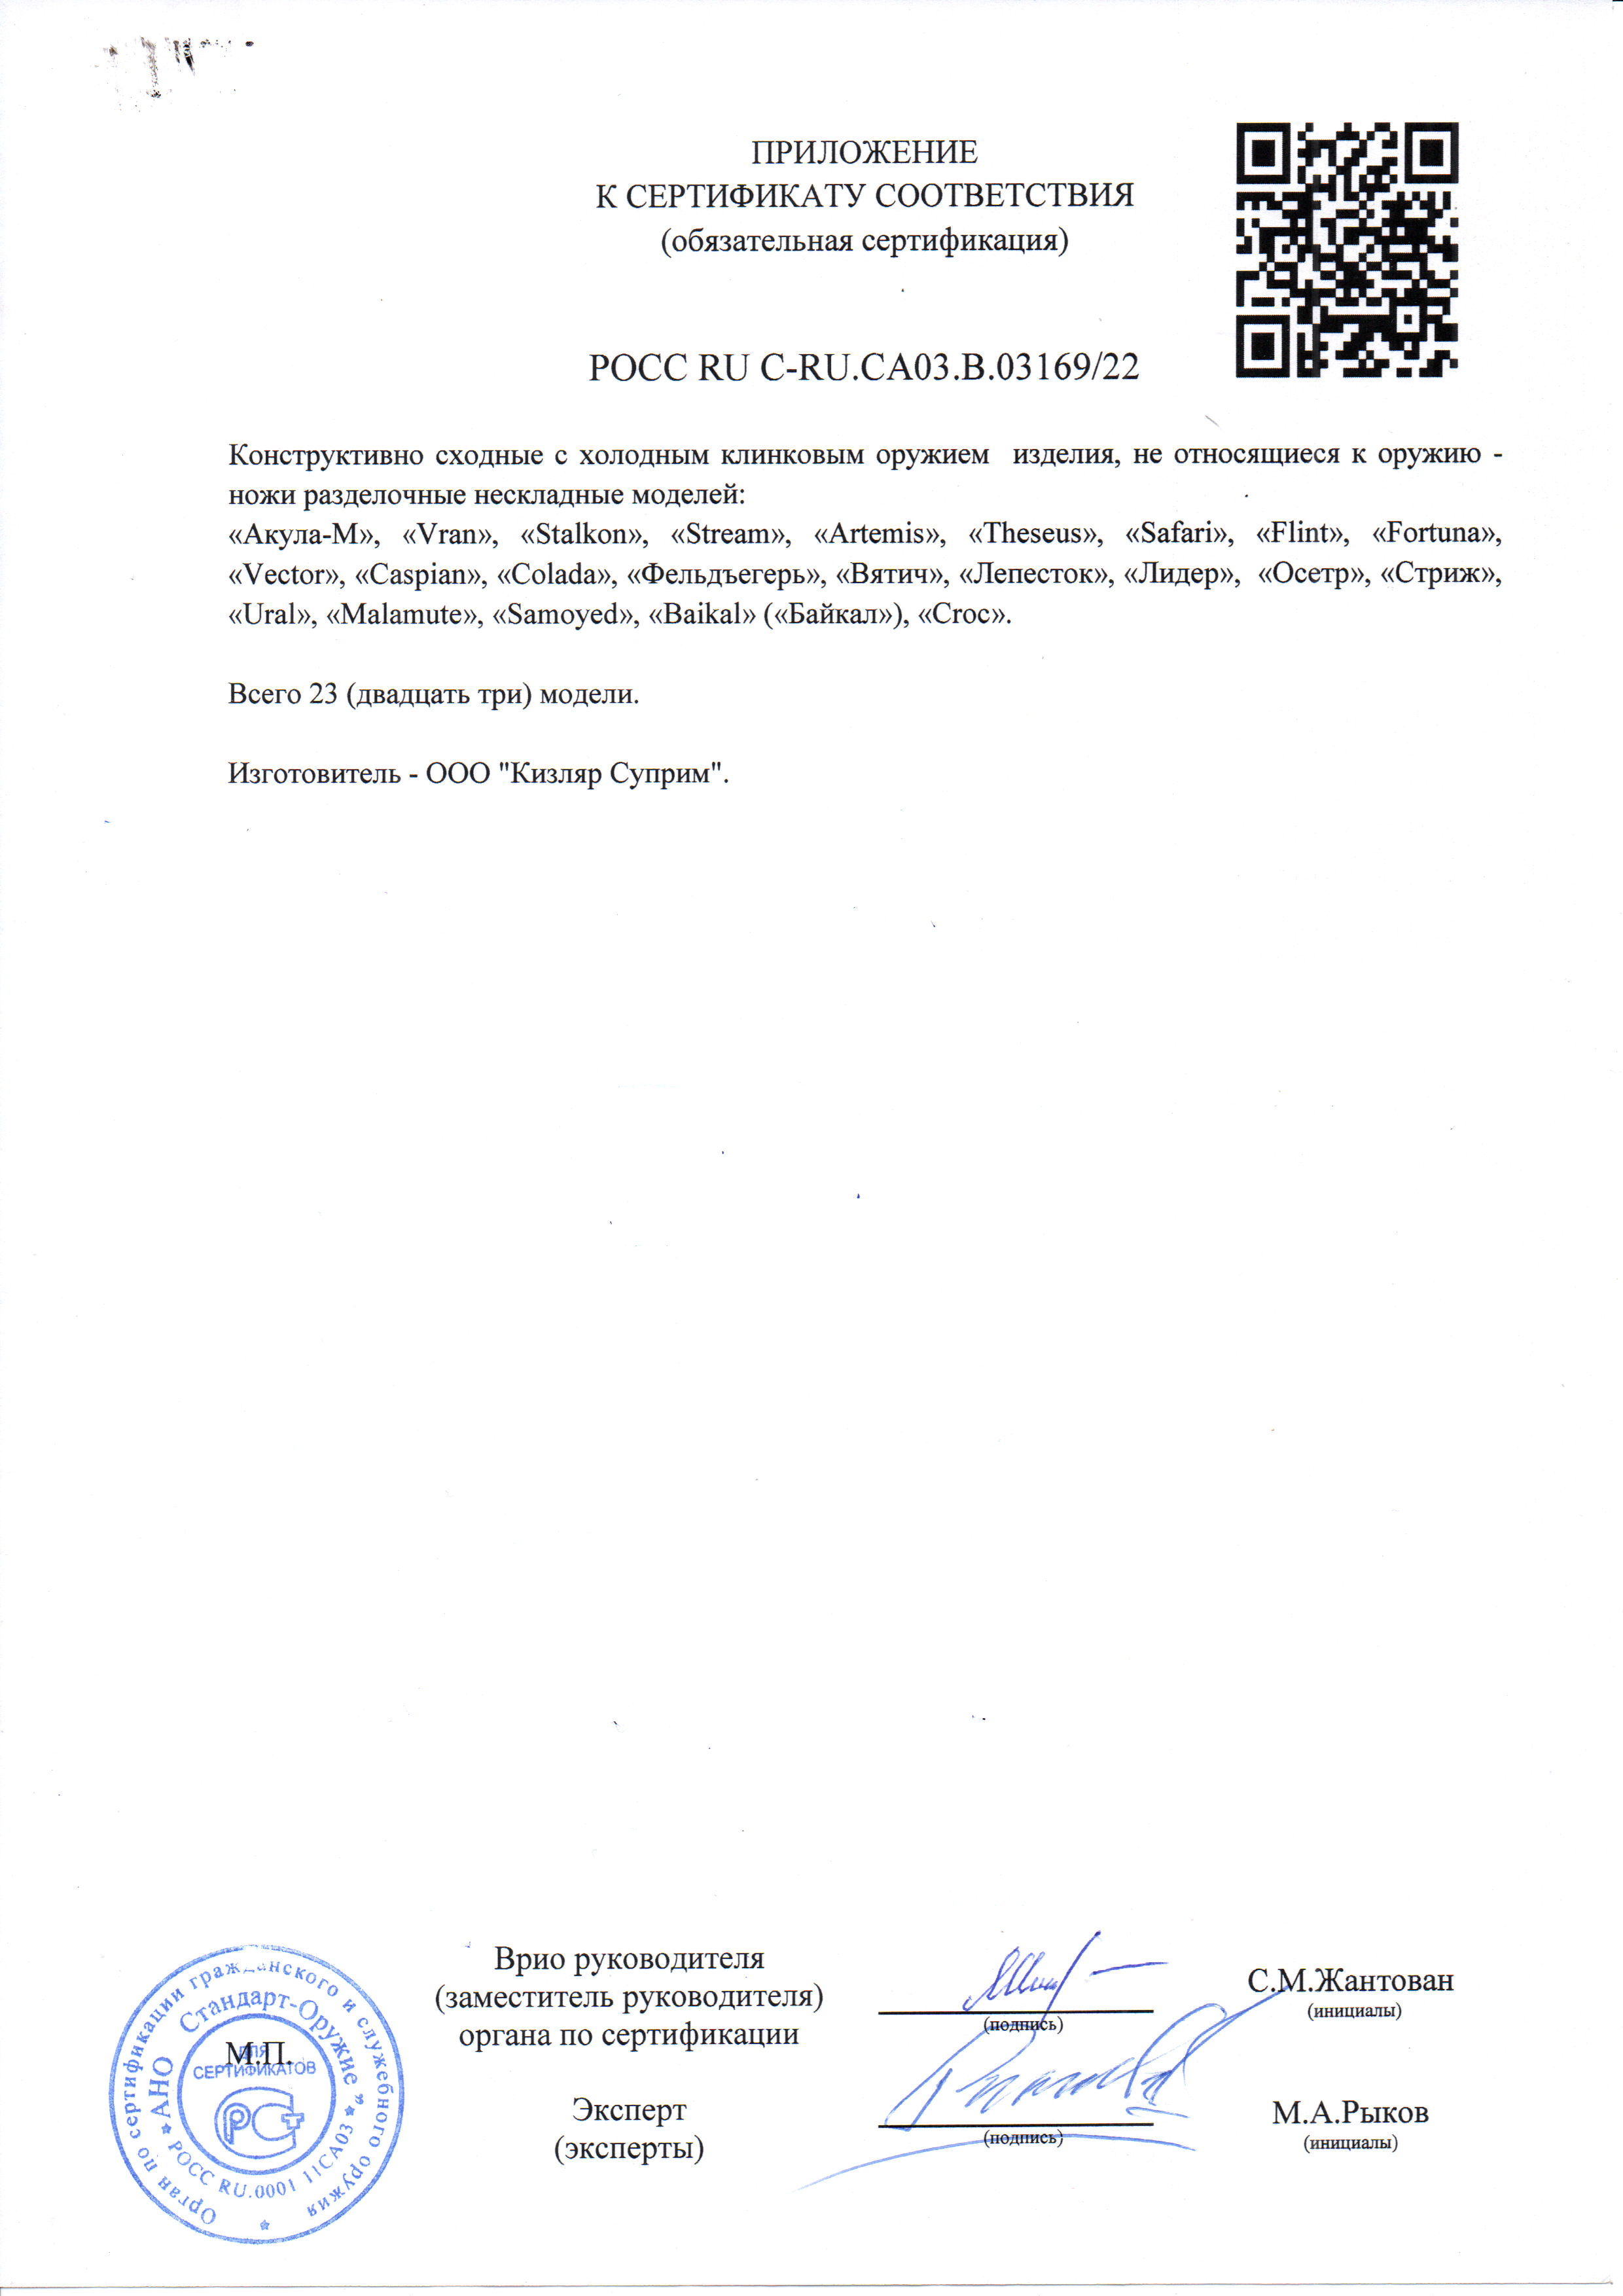 *Сертификат* Нож Ural PGK TW G10-BH LS (Satin, рукоять G10) Сертификат соответствия №POCC RU C-RU.CA03.B.03169/22 приложение Kizlyar Supreme 03169